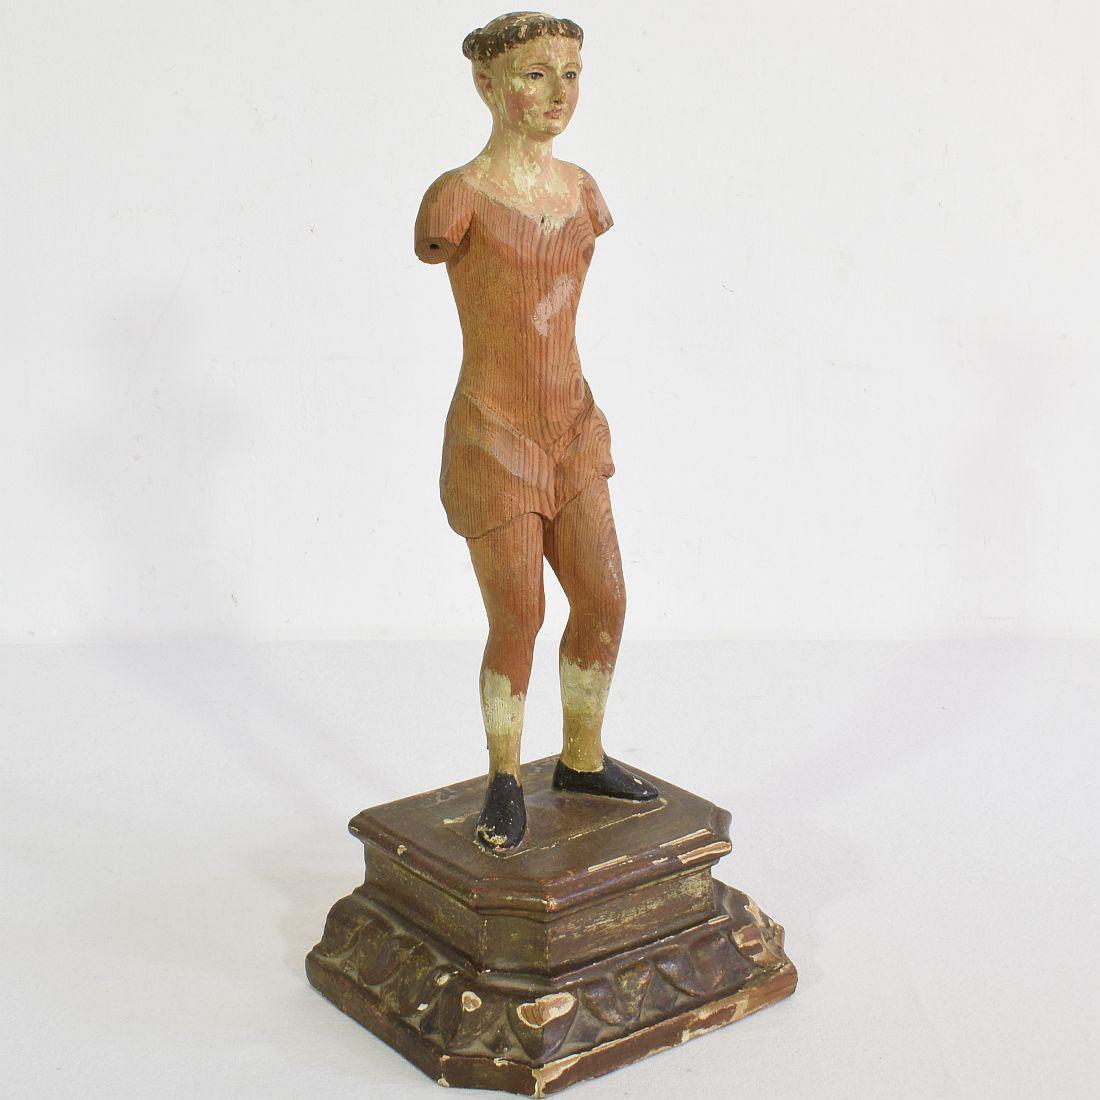 Très belle figure de saint. Bois sculpté à la main avec yeux en verre
Italie, vers 1800-1850. Vieillissement, petites pertes.

